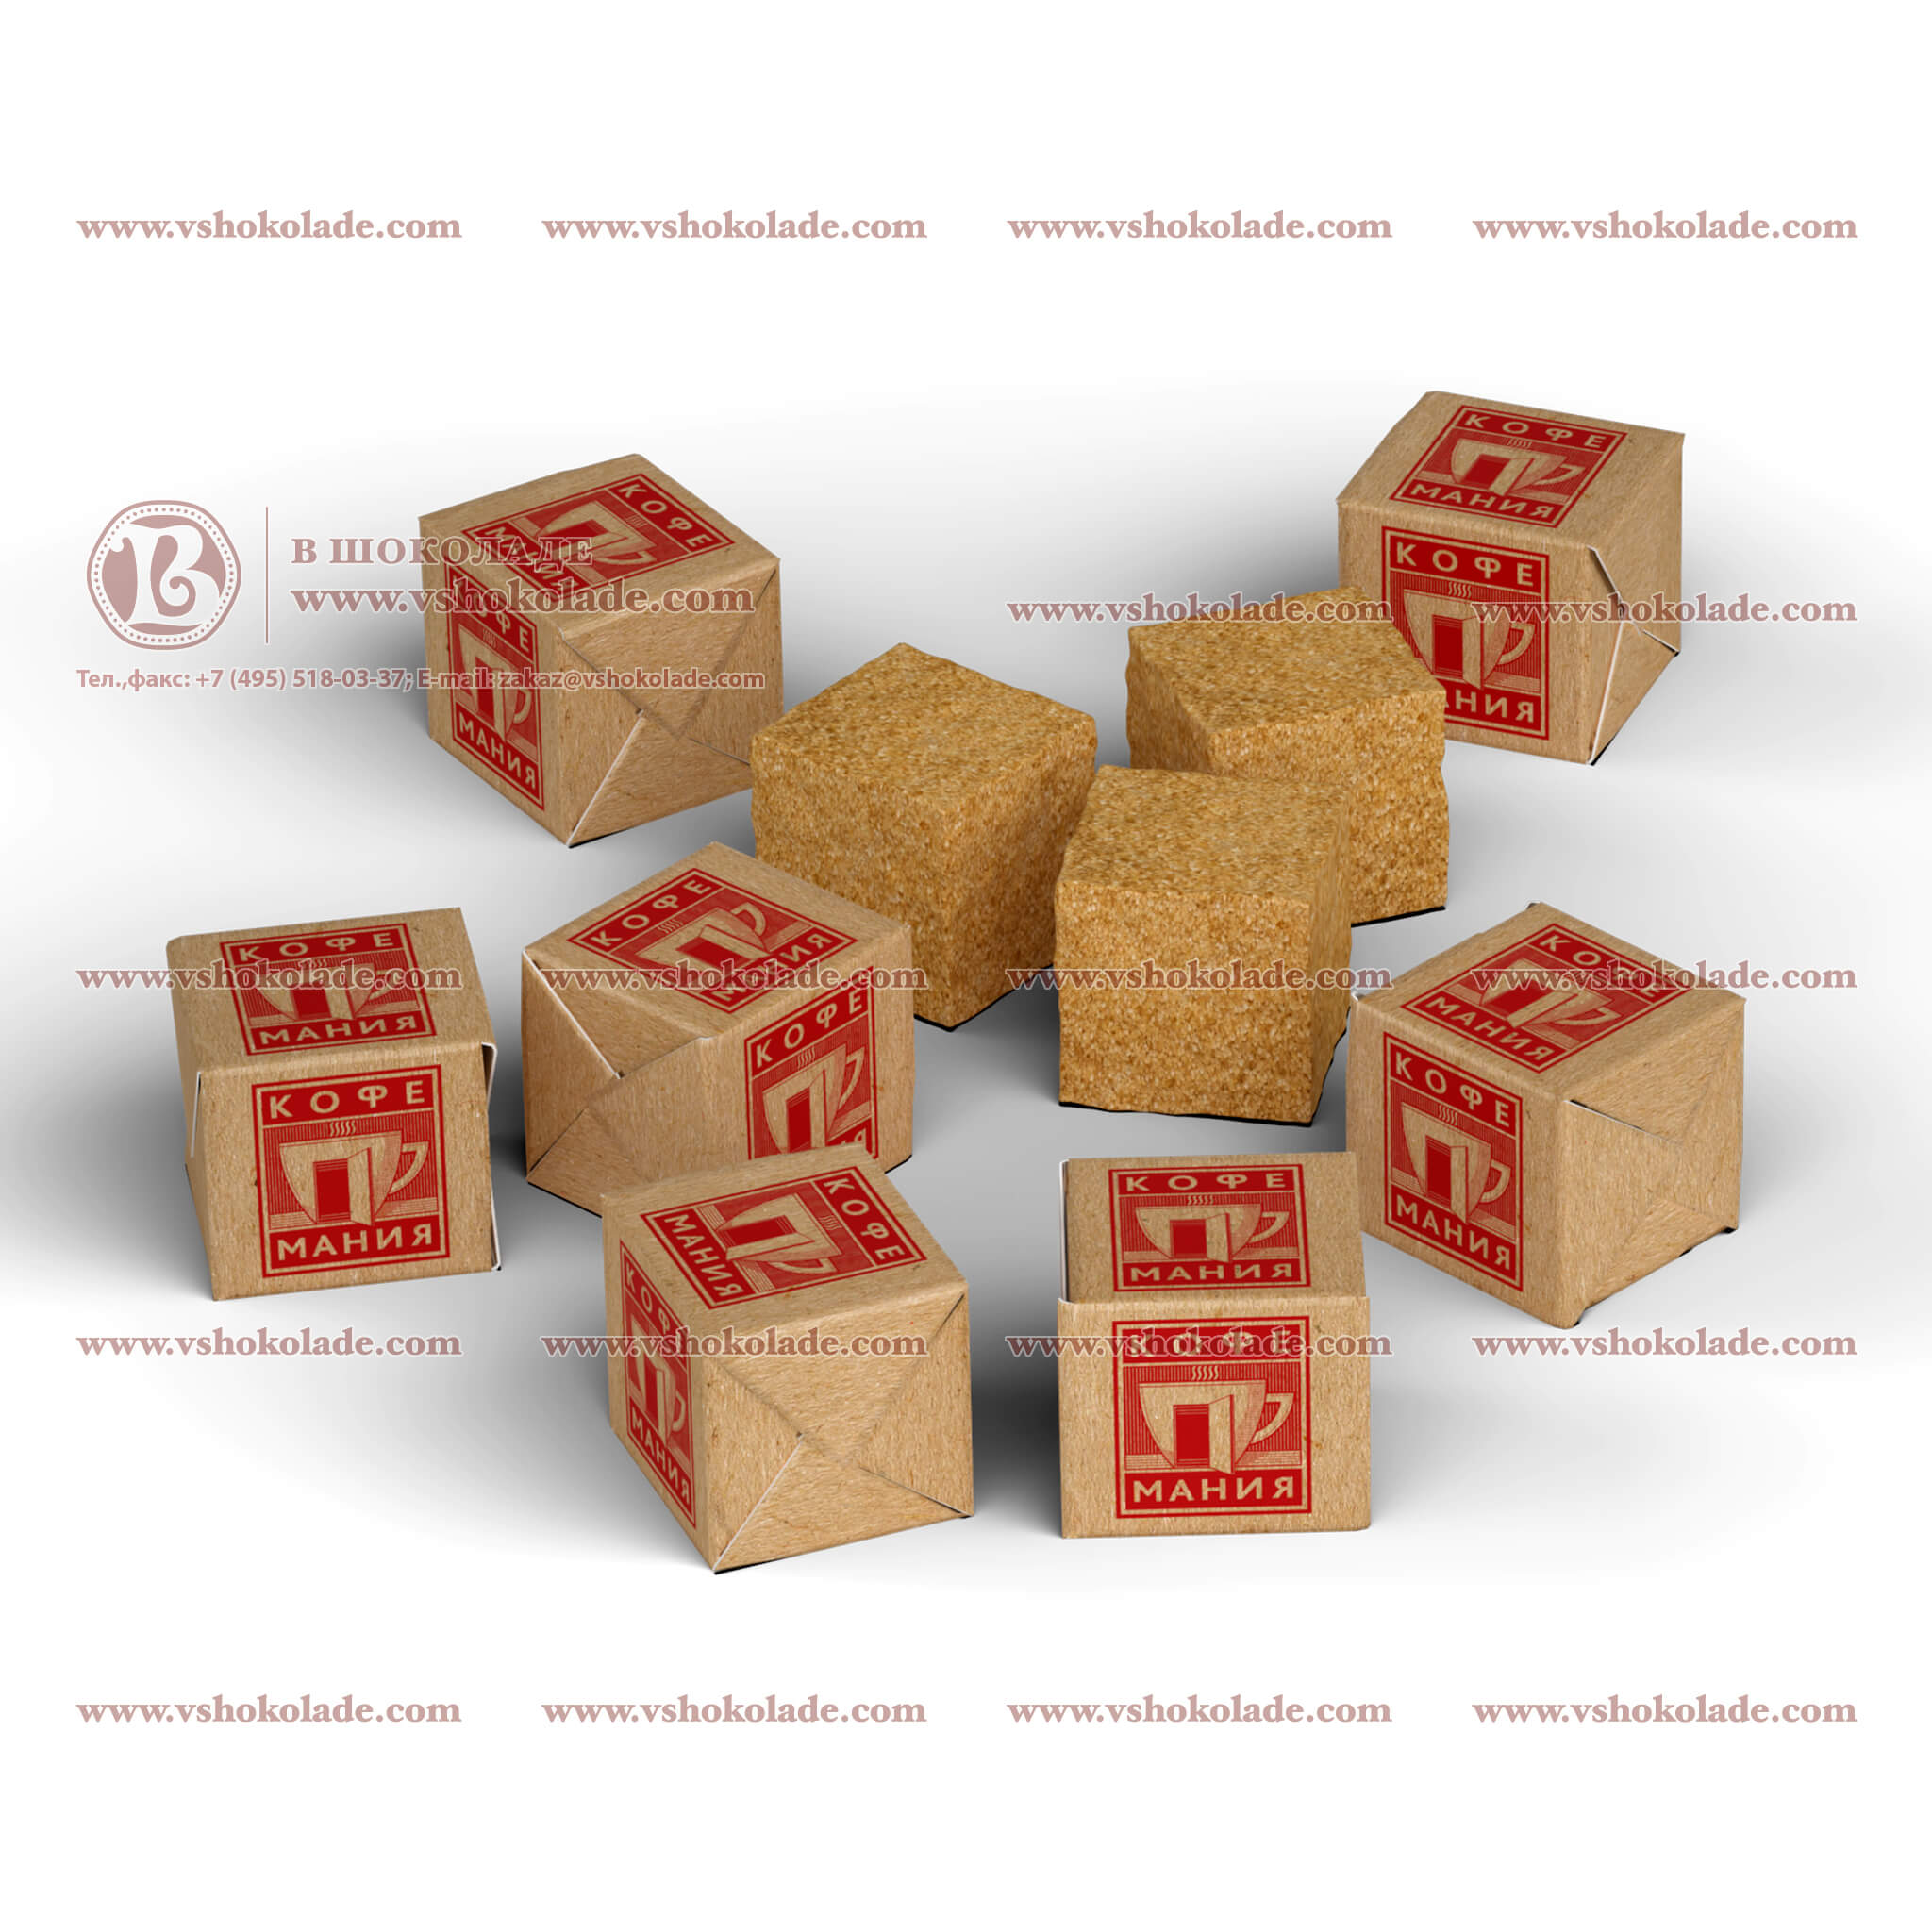 Сахар в формате кубика с логотипом заказчика. Кусковой, упакован в брендированную обертку